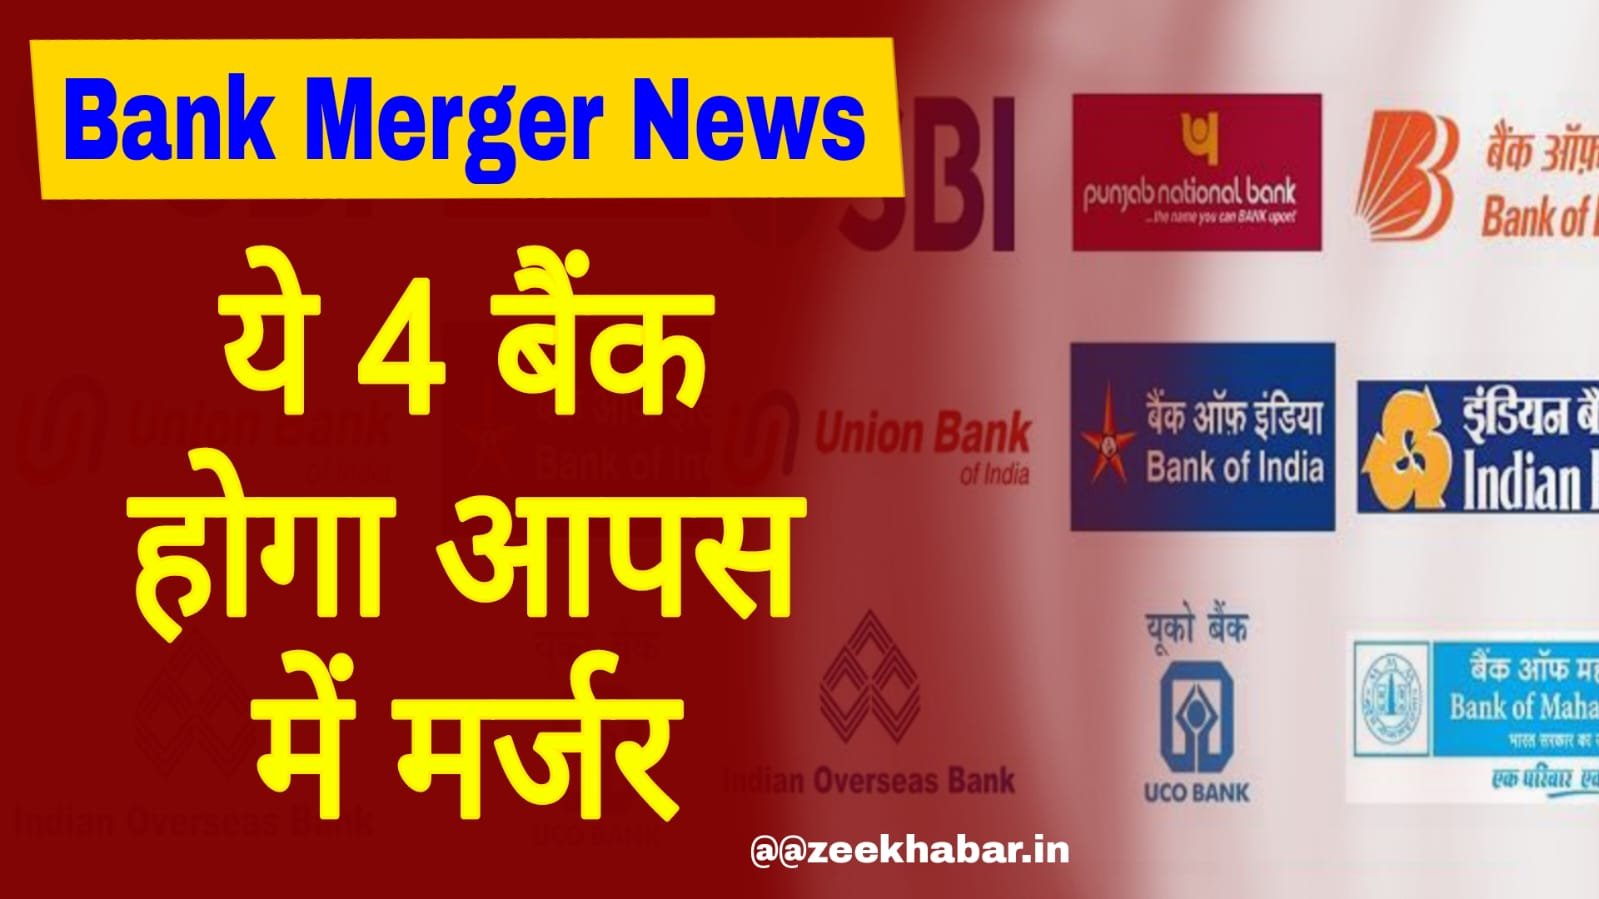 Bank Merger News